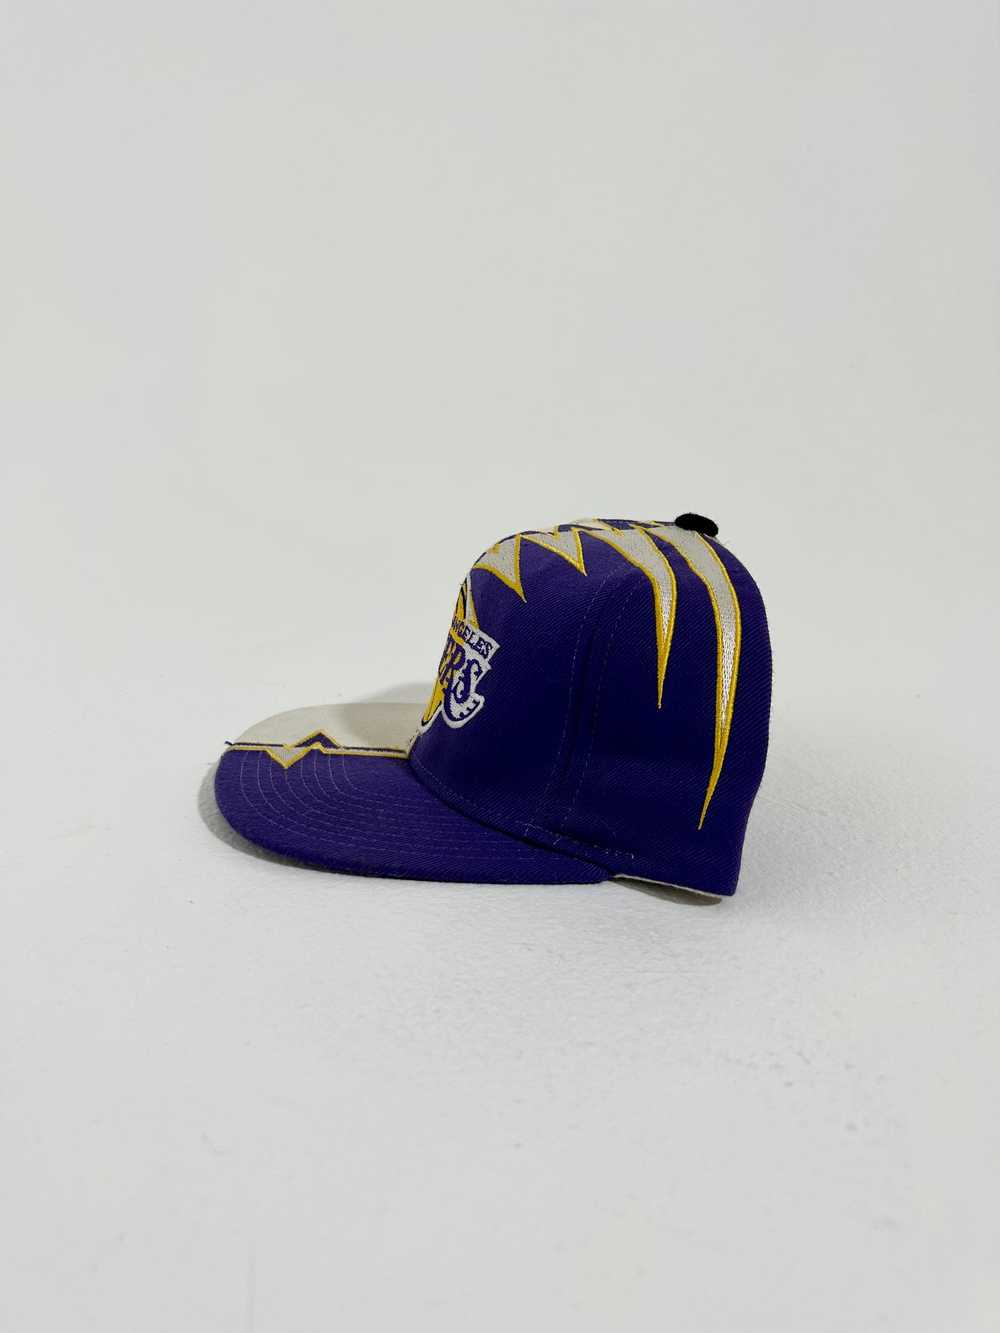 Vintage Los Angeles Lakers Starter Shockwave Hat - image 6